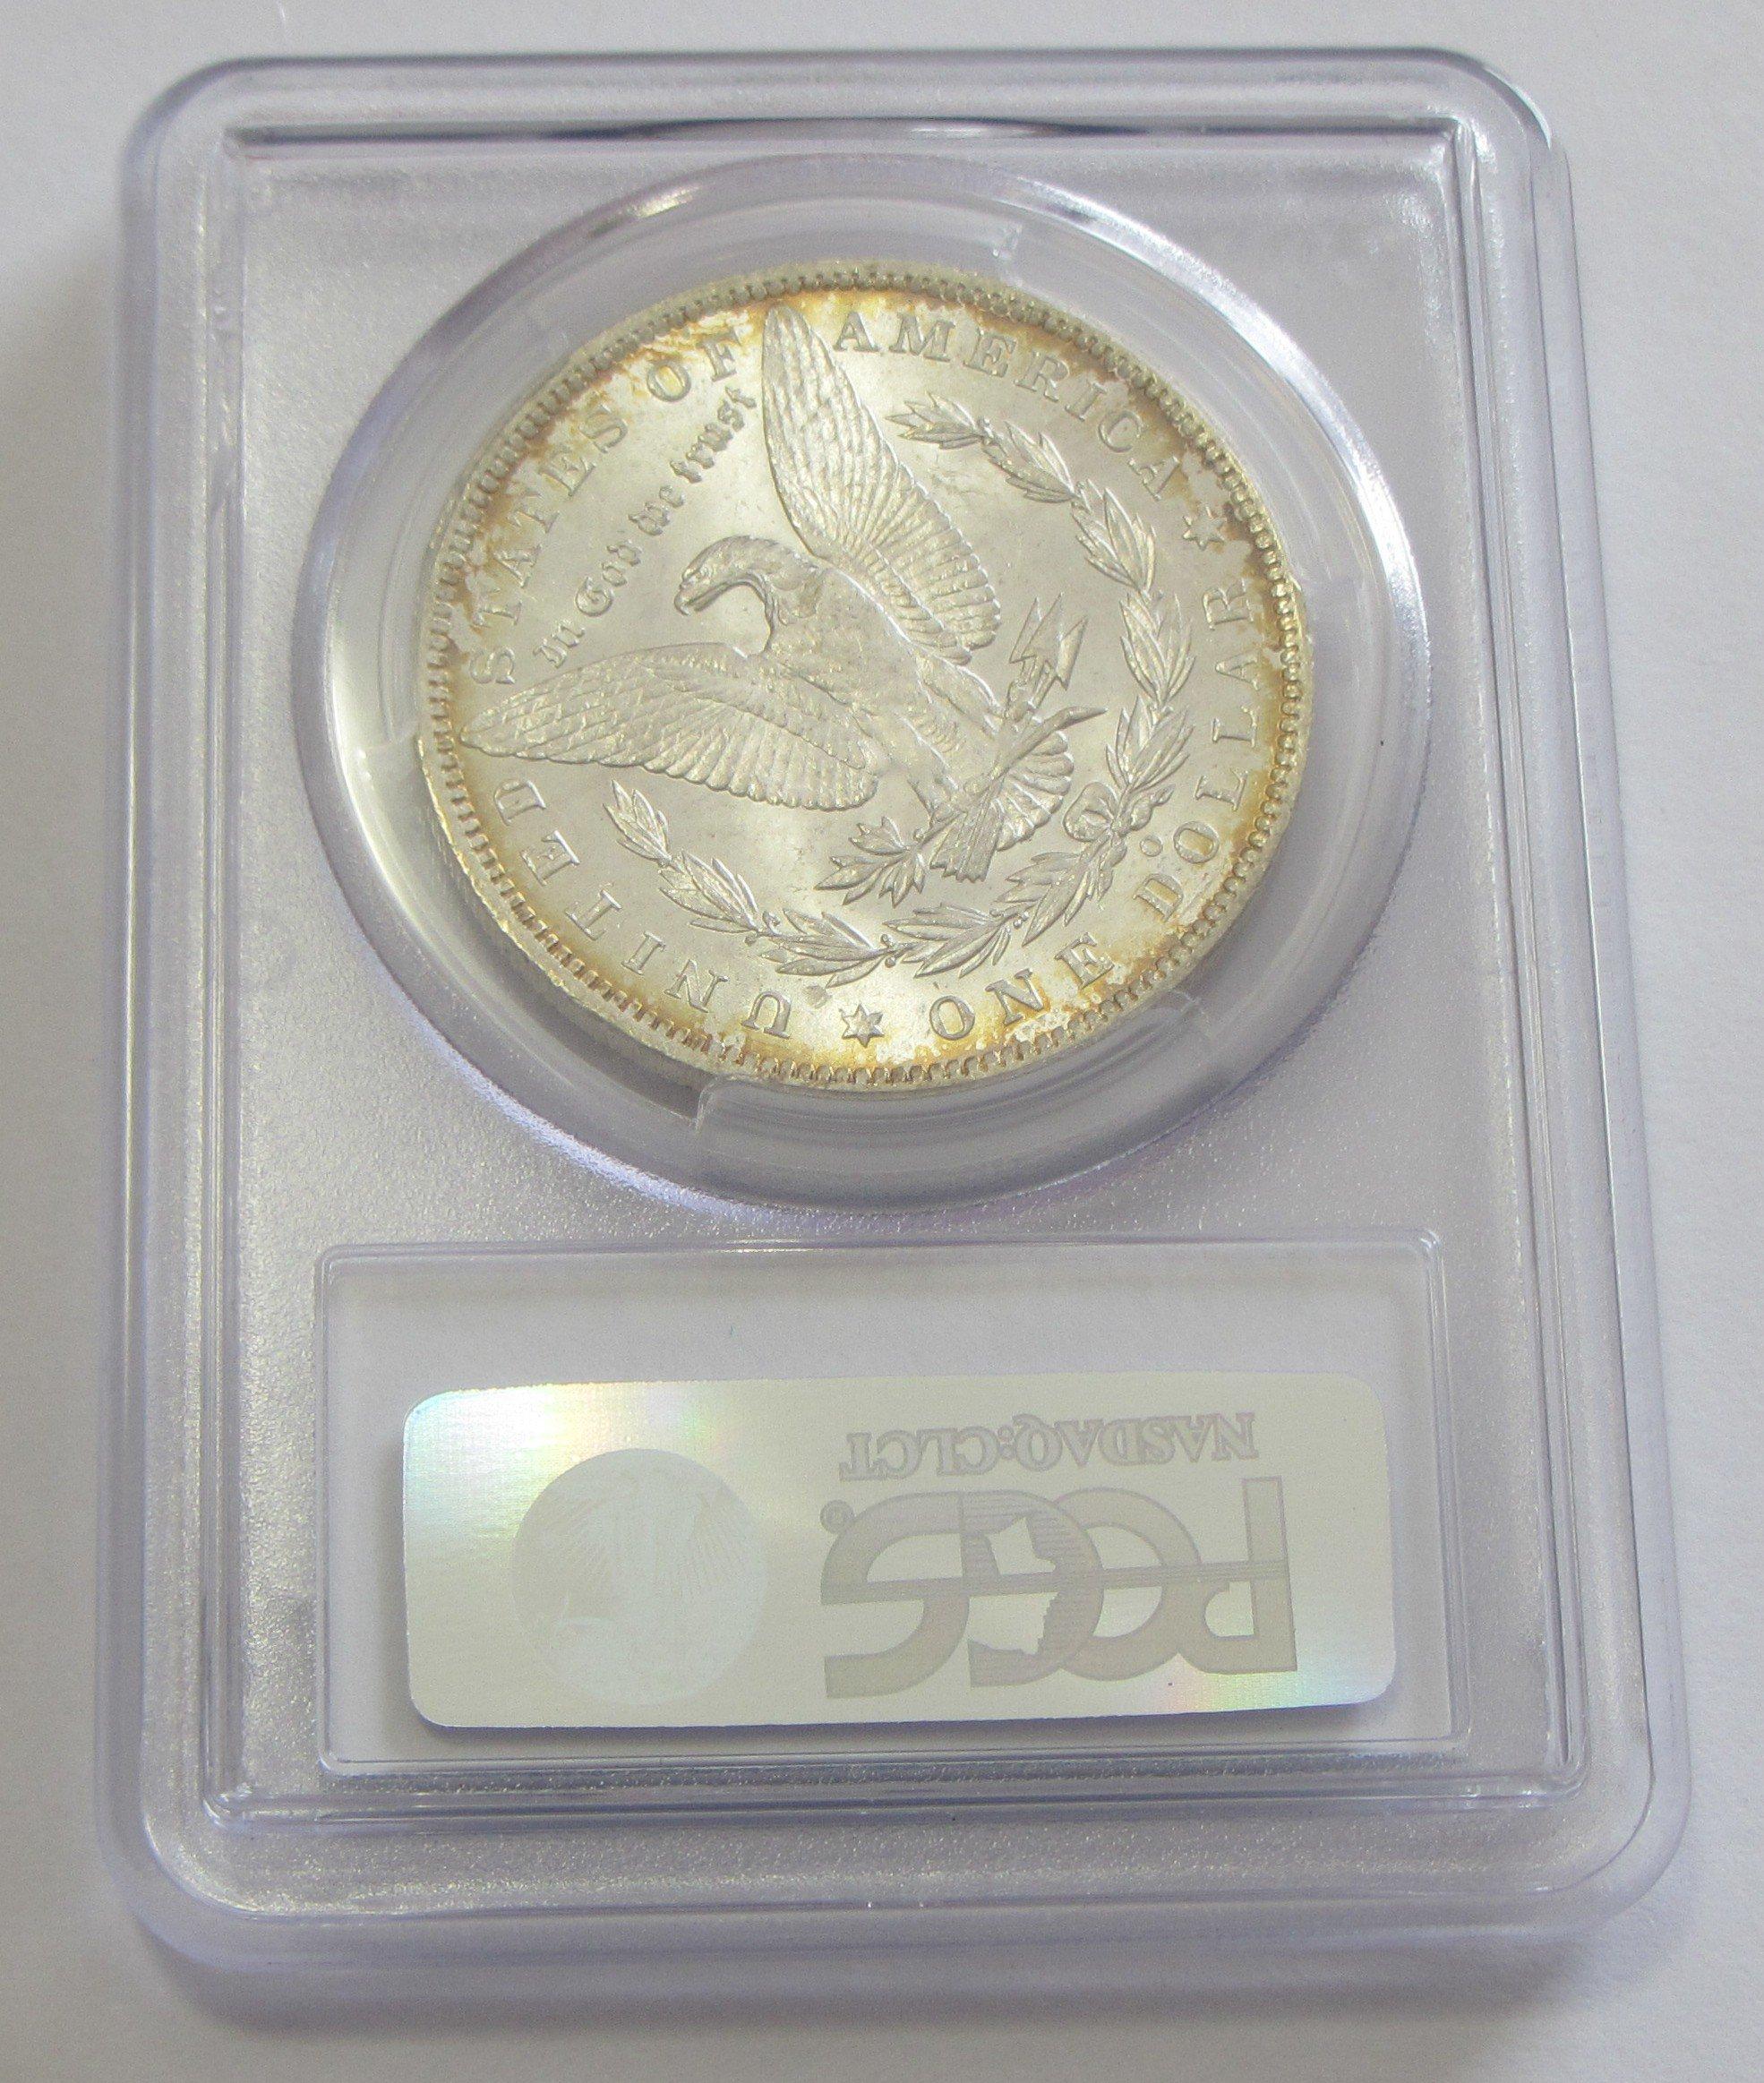 $1 1885-O MORGAN PCGS GEM MS 65